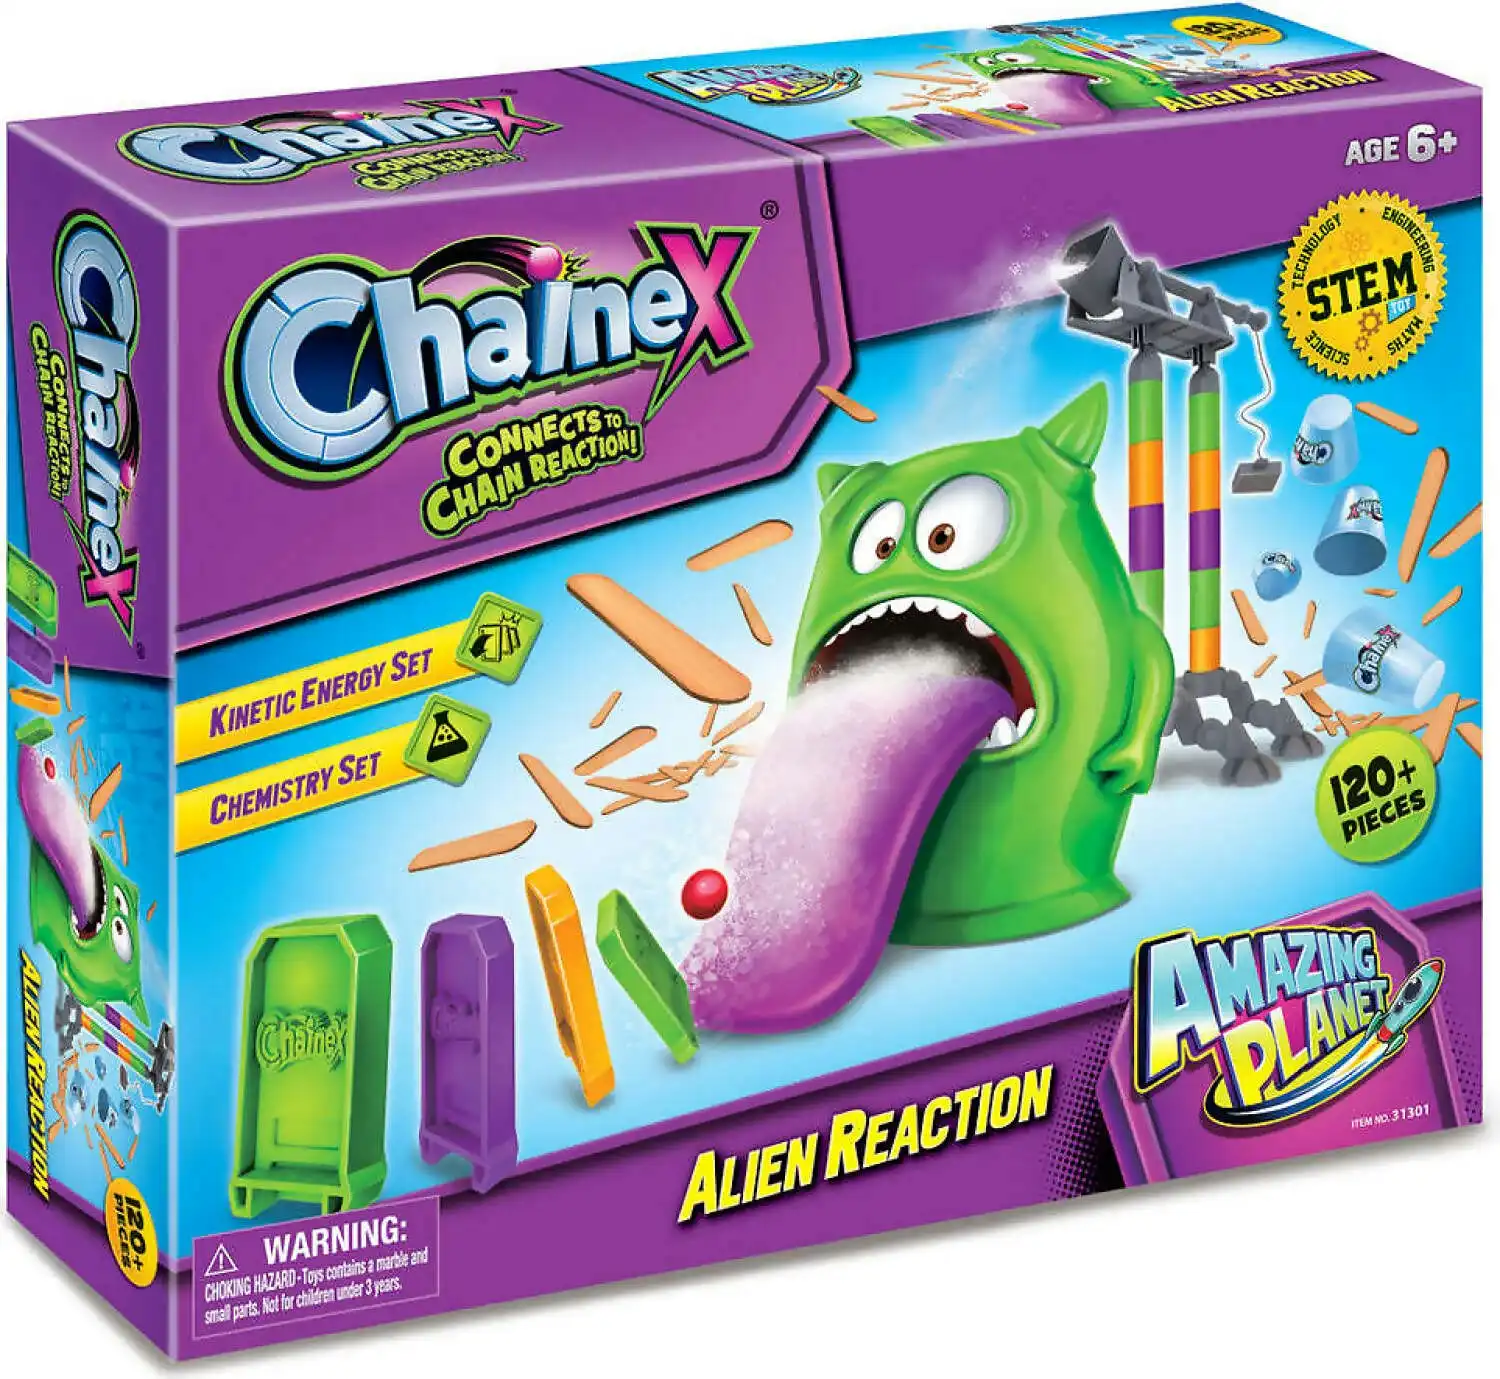 Chainex - Alien Reaction 120+ Pieces